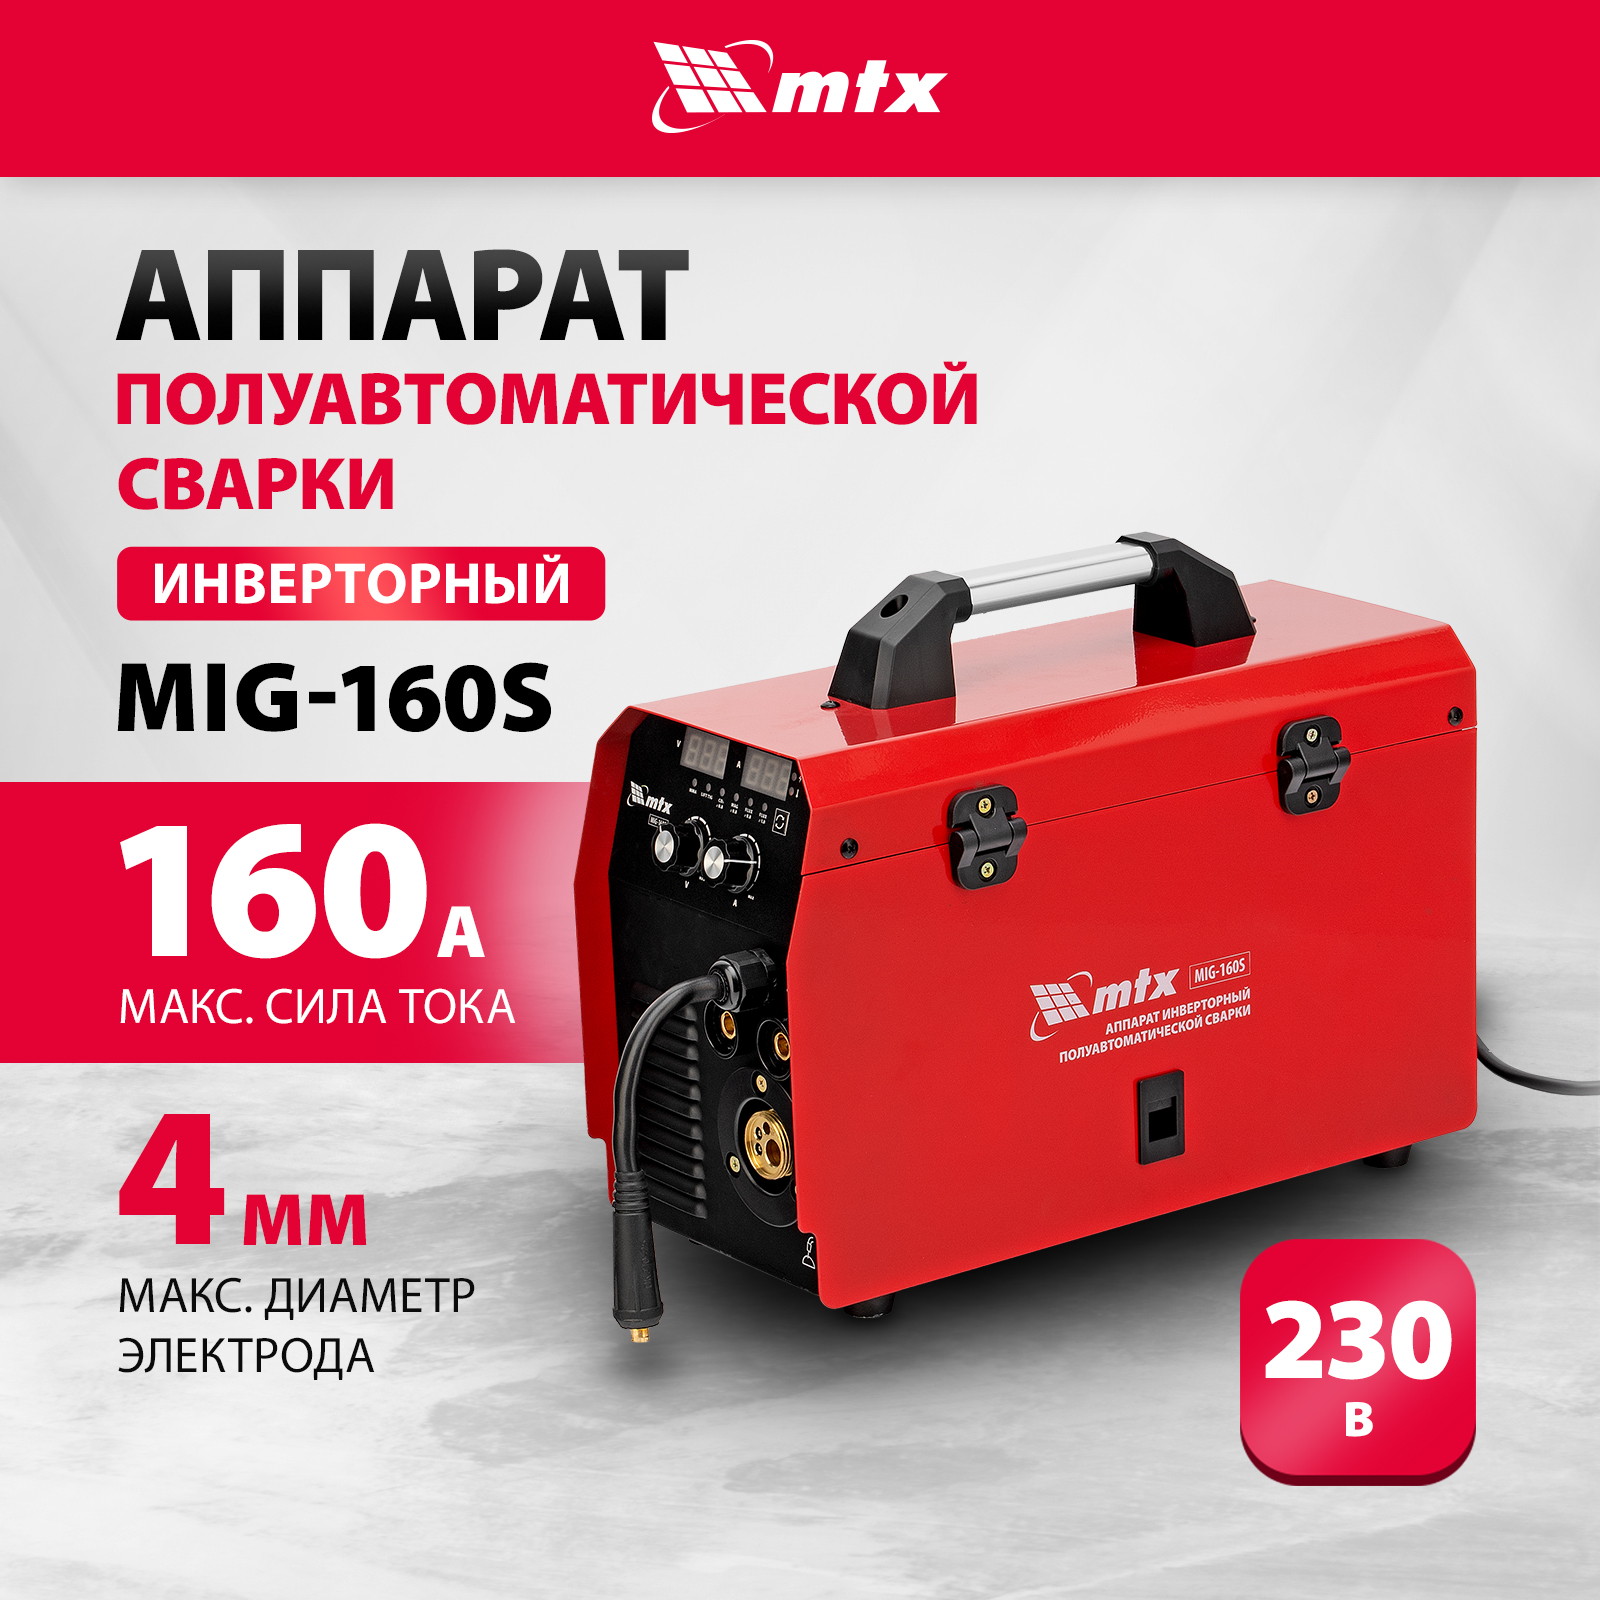 Сварочный аппарат-полуавтомат инверторный MTX MIG-160S, 160A, ПВ 60%, катушка 5 кг 94301 сварочный аппарат gemeral mig 160s 12728